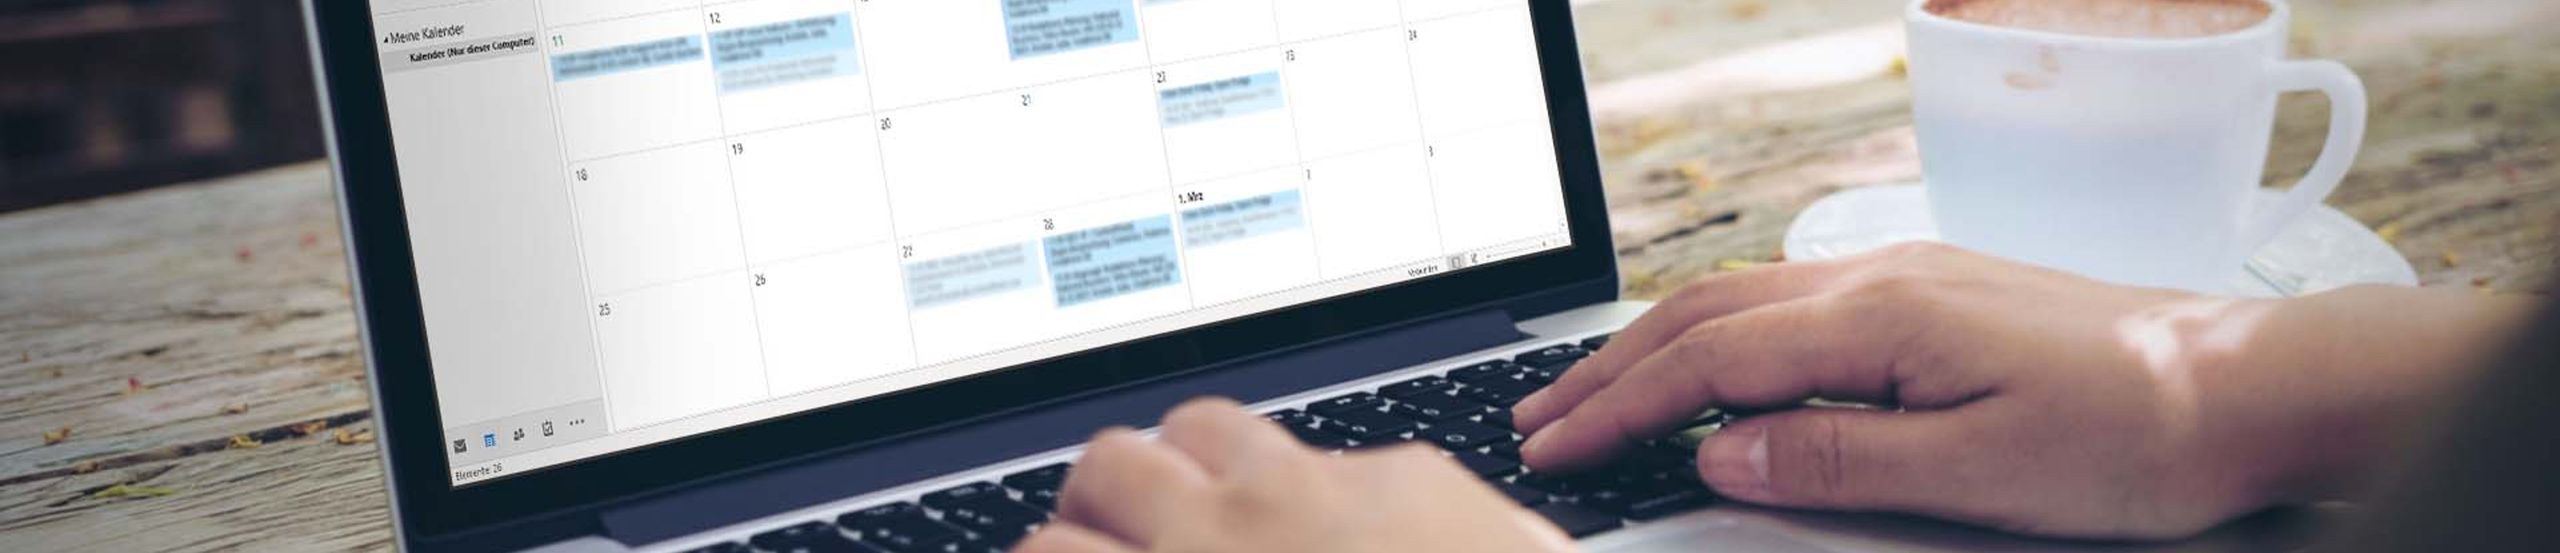 Ein Laptop mit geöffnetem Outlook-365-Kalender